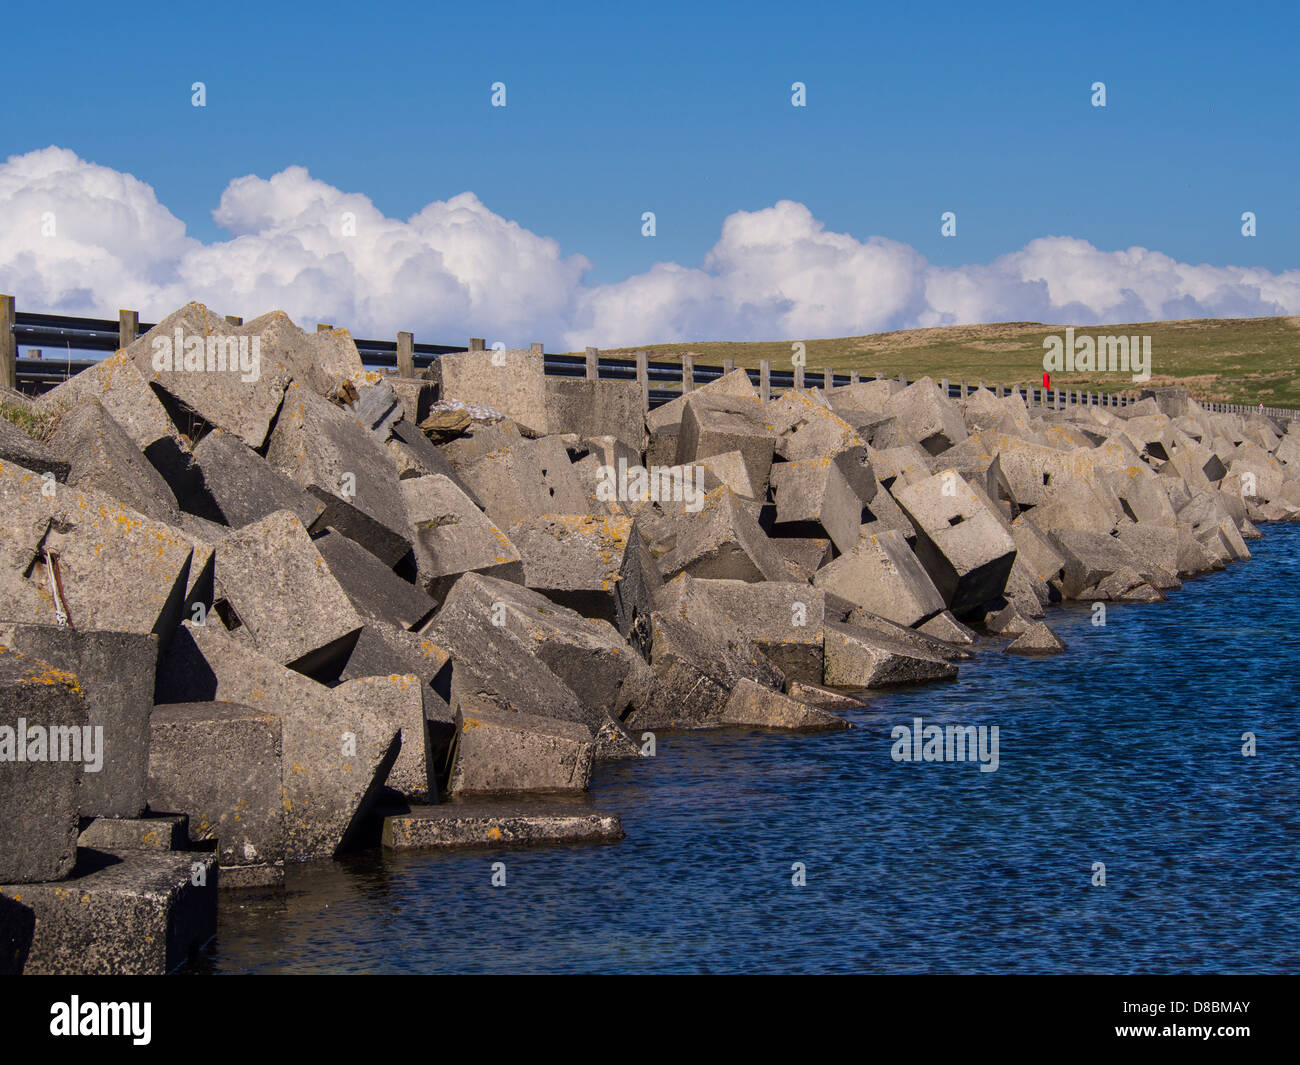 Ecosse, îles Orcades, barrière Churchill construit par les prisonniers de guerre pour protéger Roayal Navy à Scapa Flow Banque D'Images